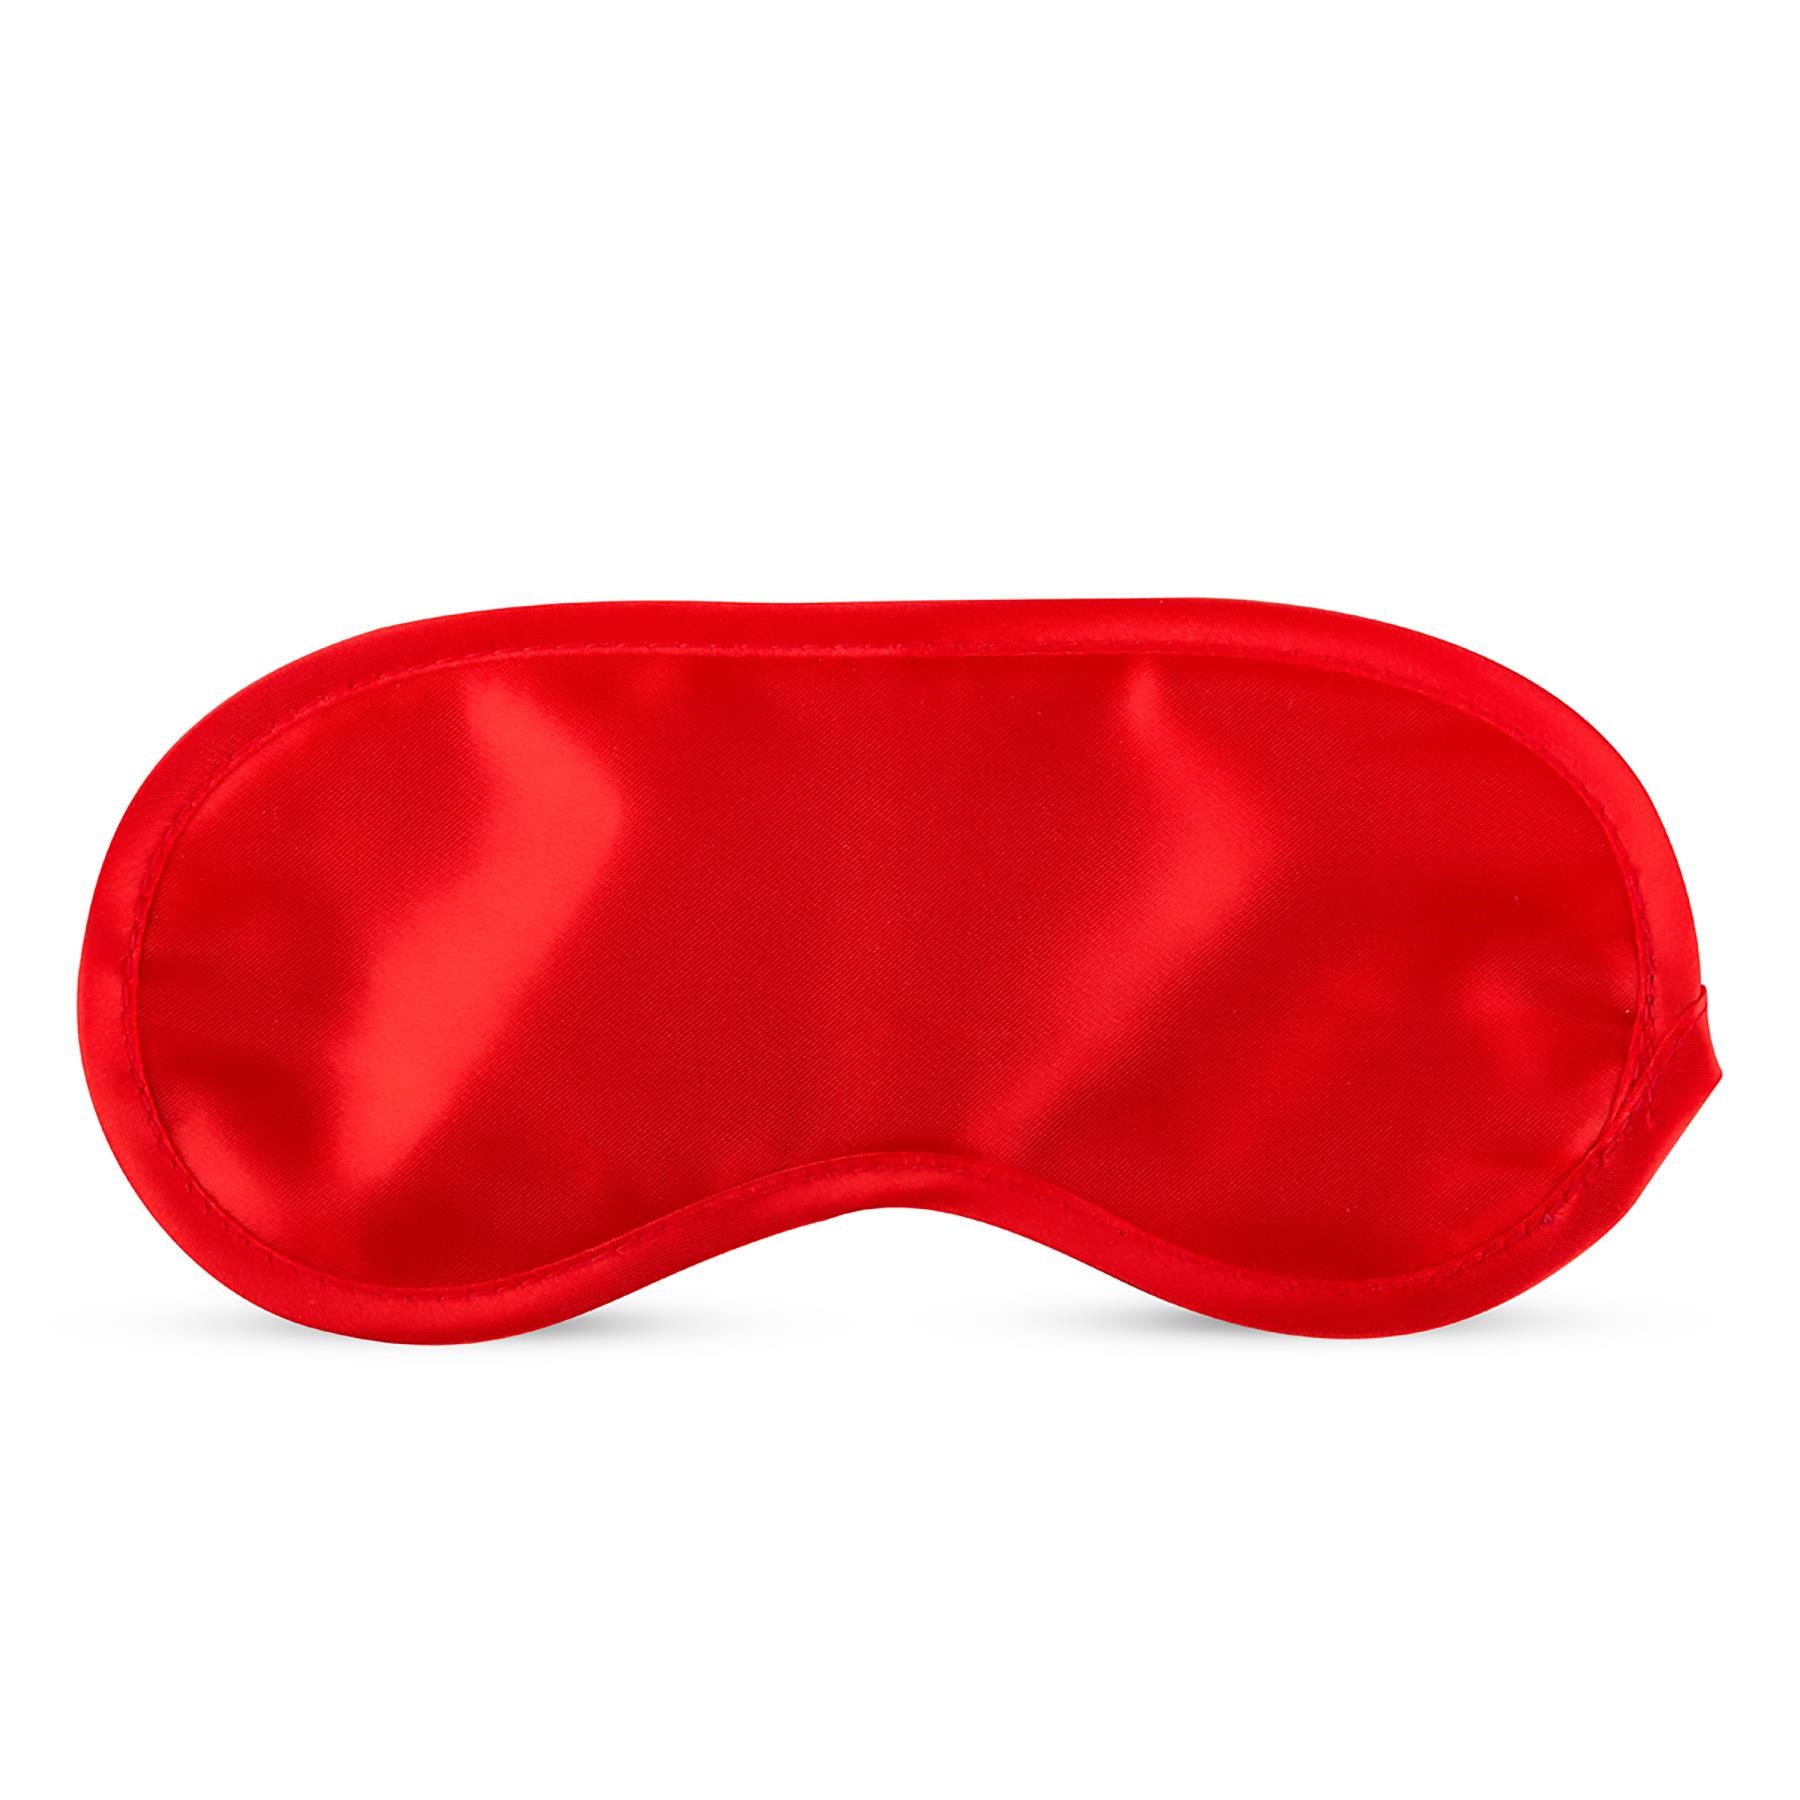 I Love Red Gift Set - Blindfold